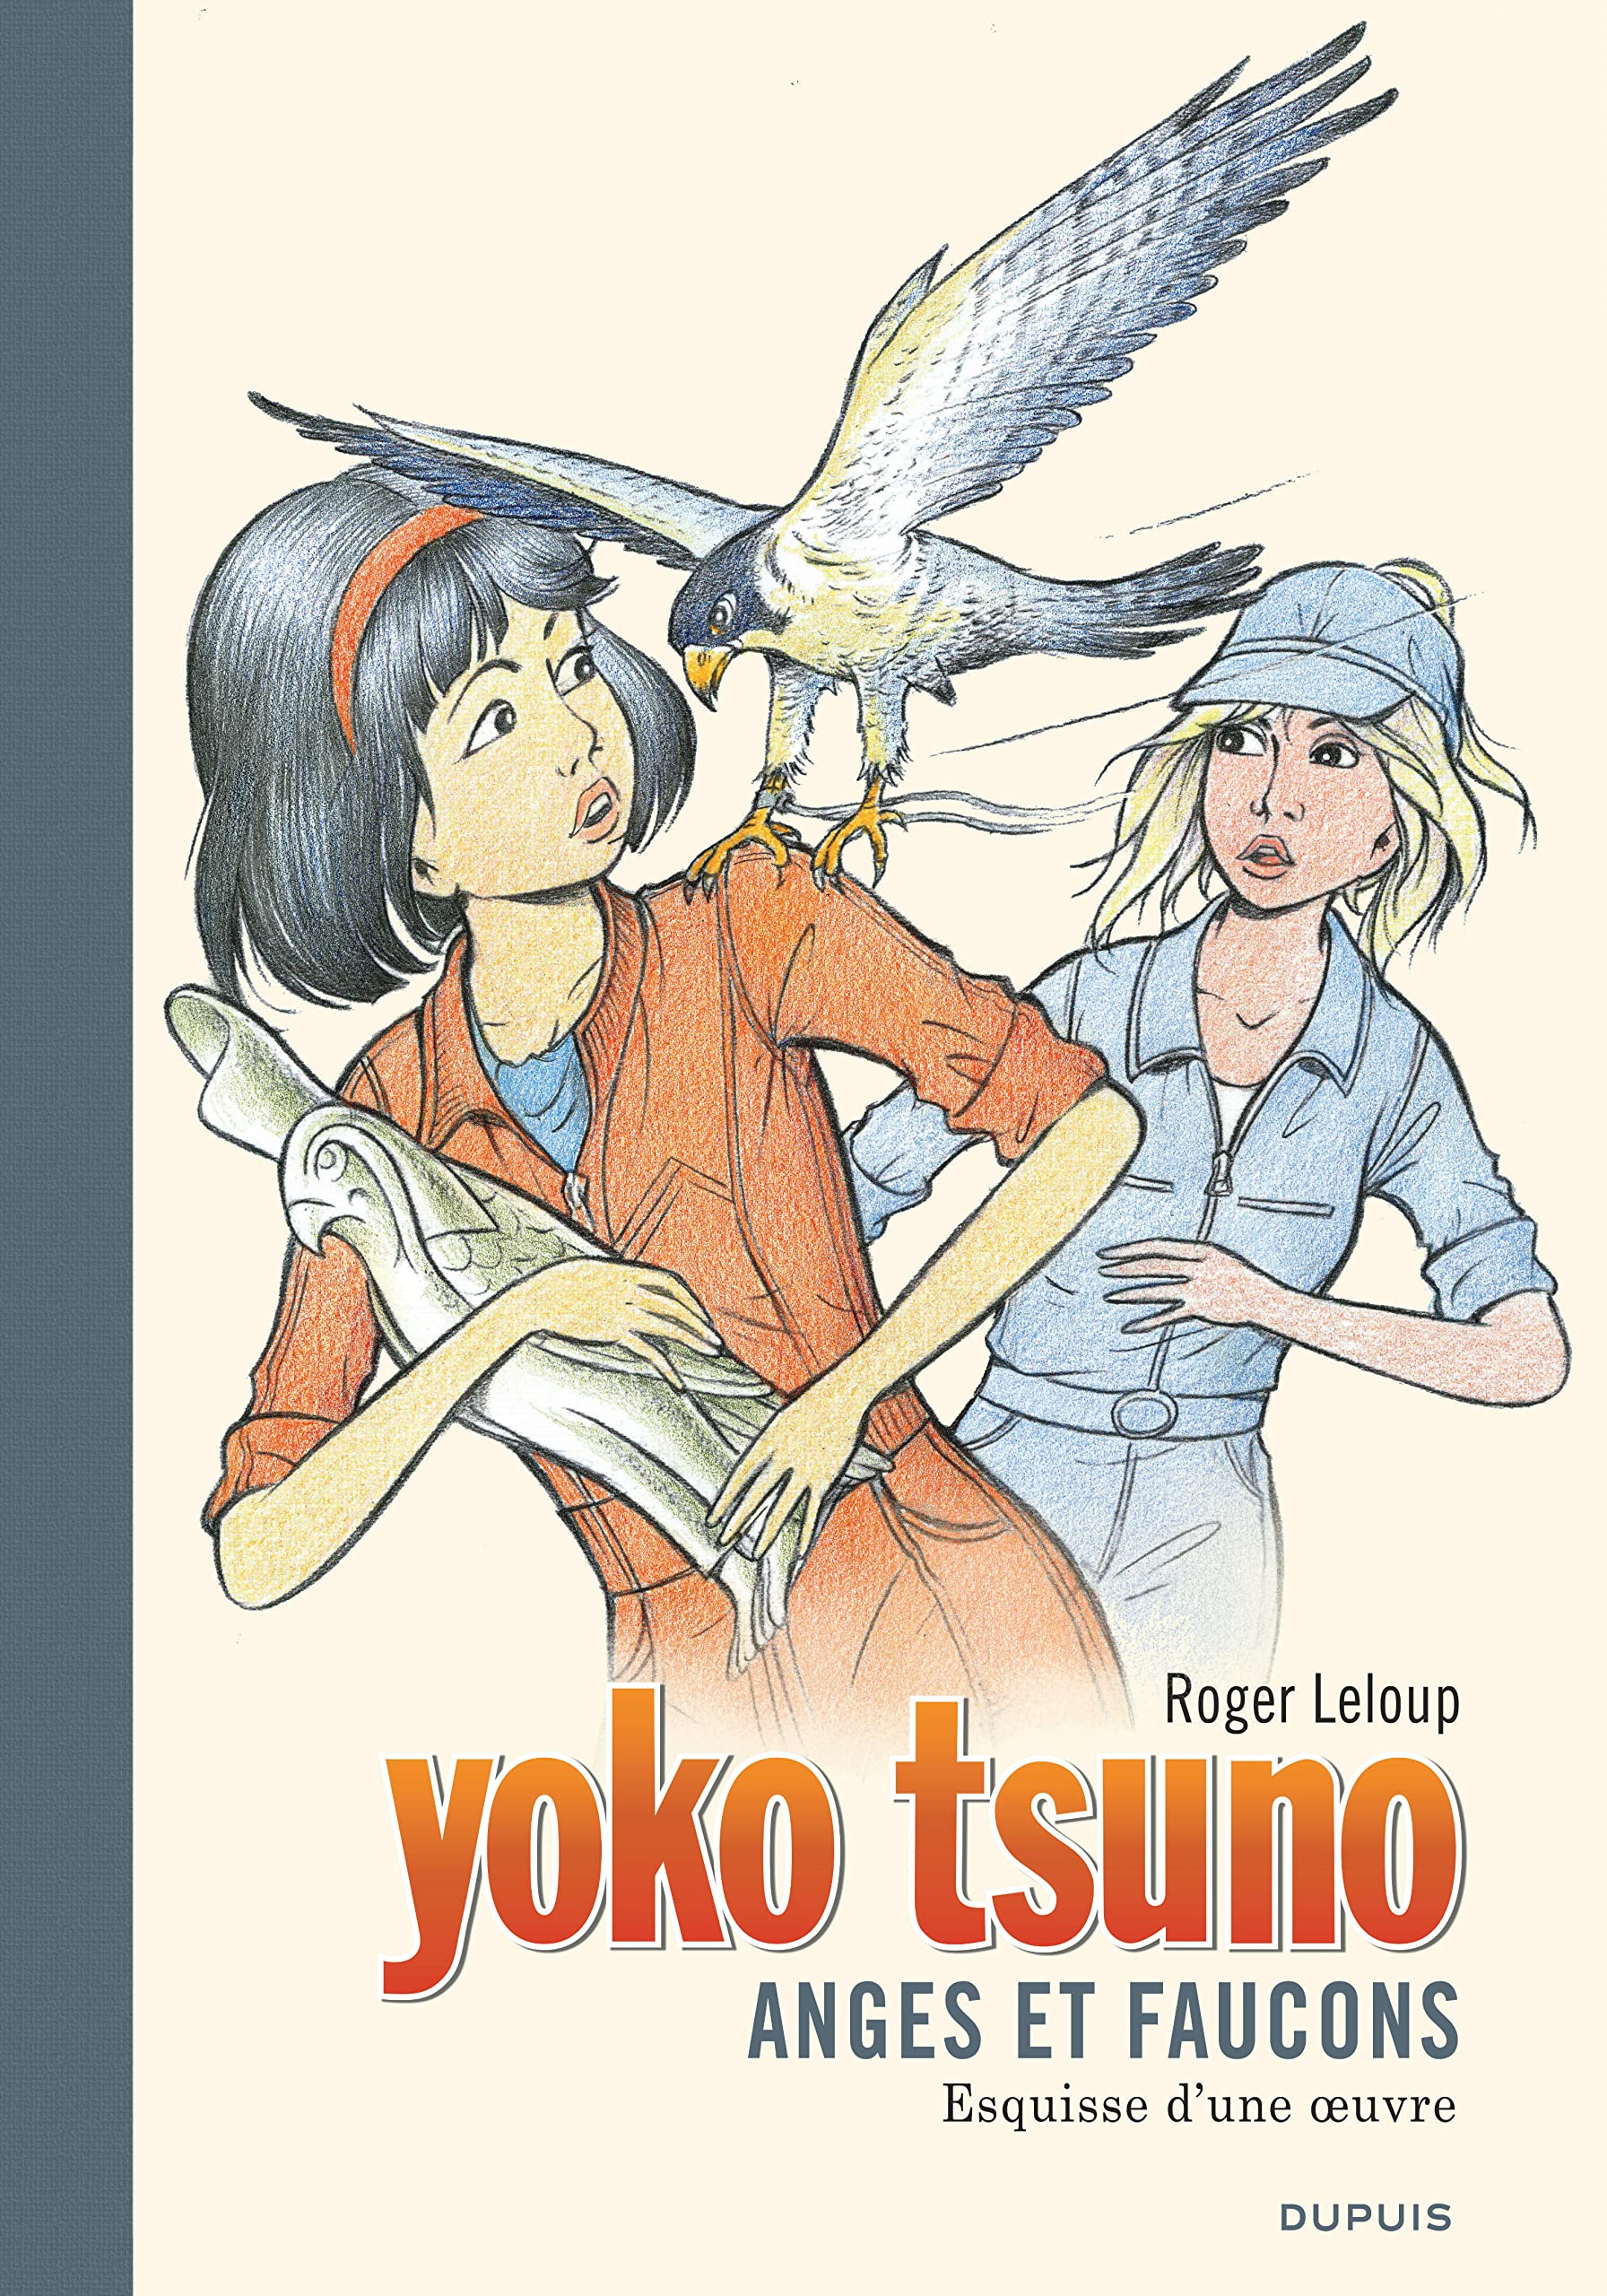 YOKO TSUNO gf 29